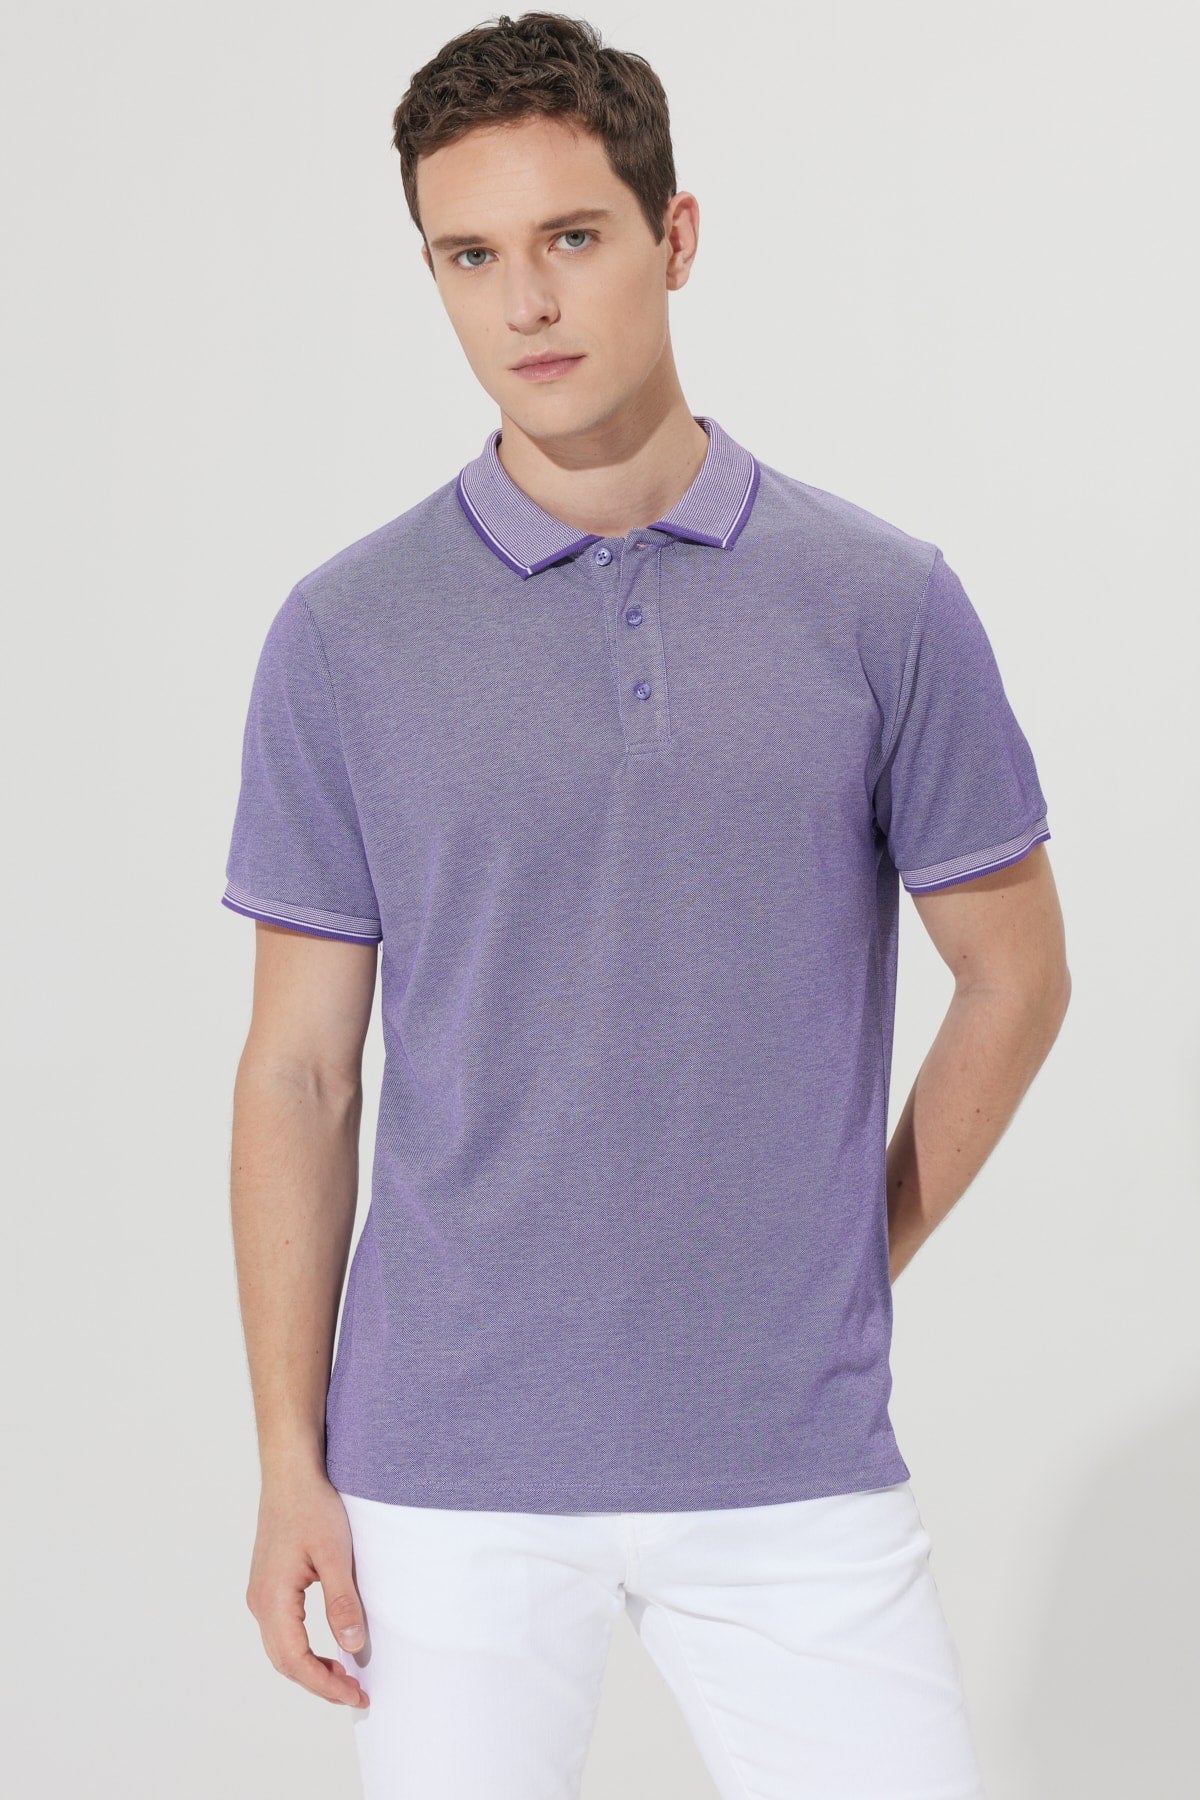  Мужская безусадочная хлопчатобумажная ткань Slim Fit Slim Fit Фиолетово-белая футболка с воротником-поло с защитой от перекатывания